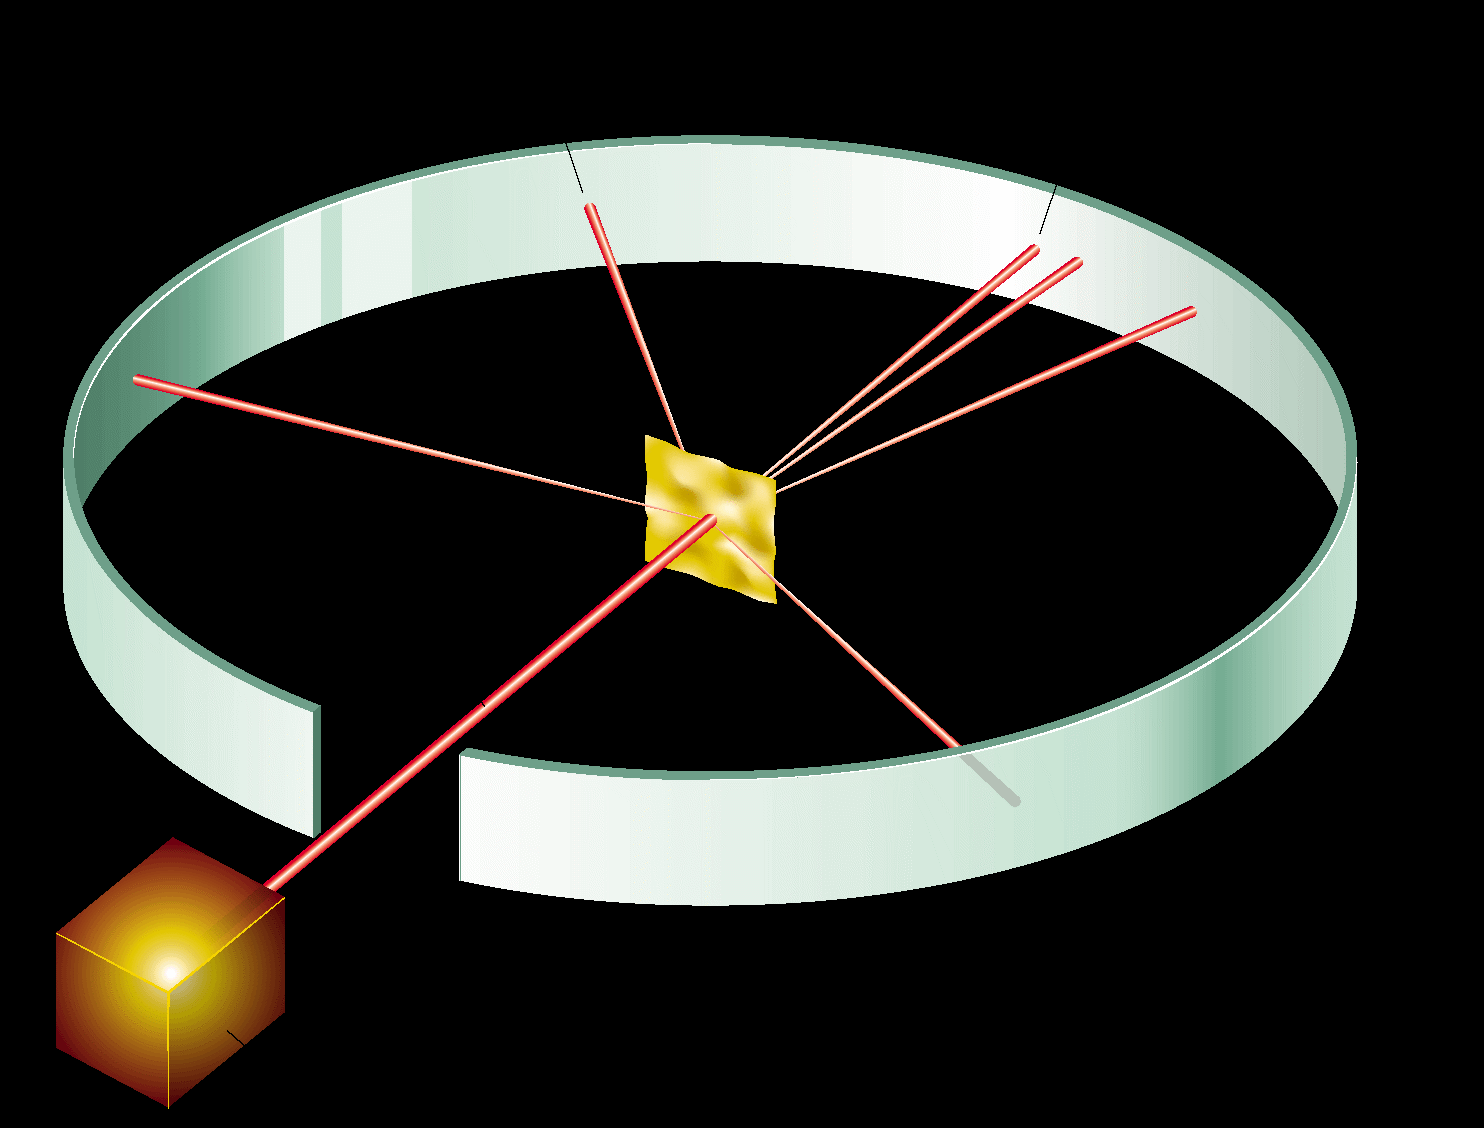 O átomo com núcleo O Experimento de Rutherford A maioria das partículas passaram através da chapa sem desviar.